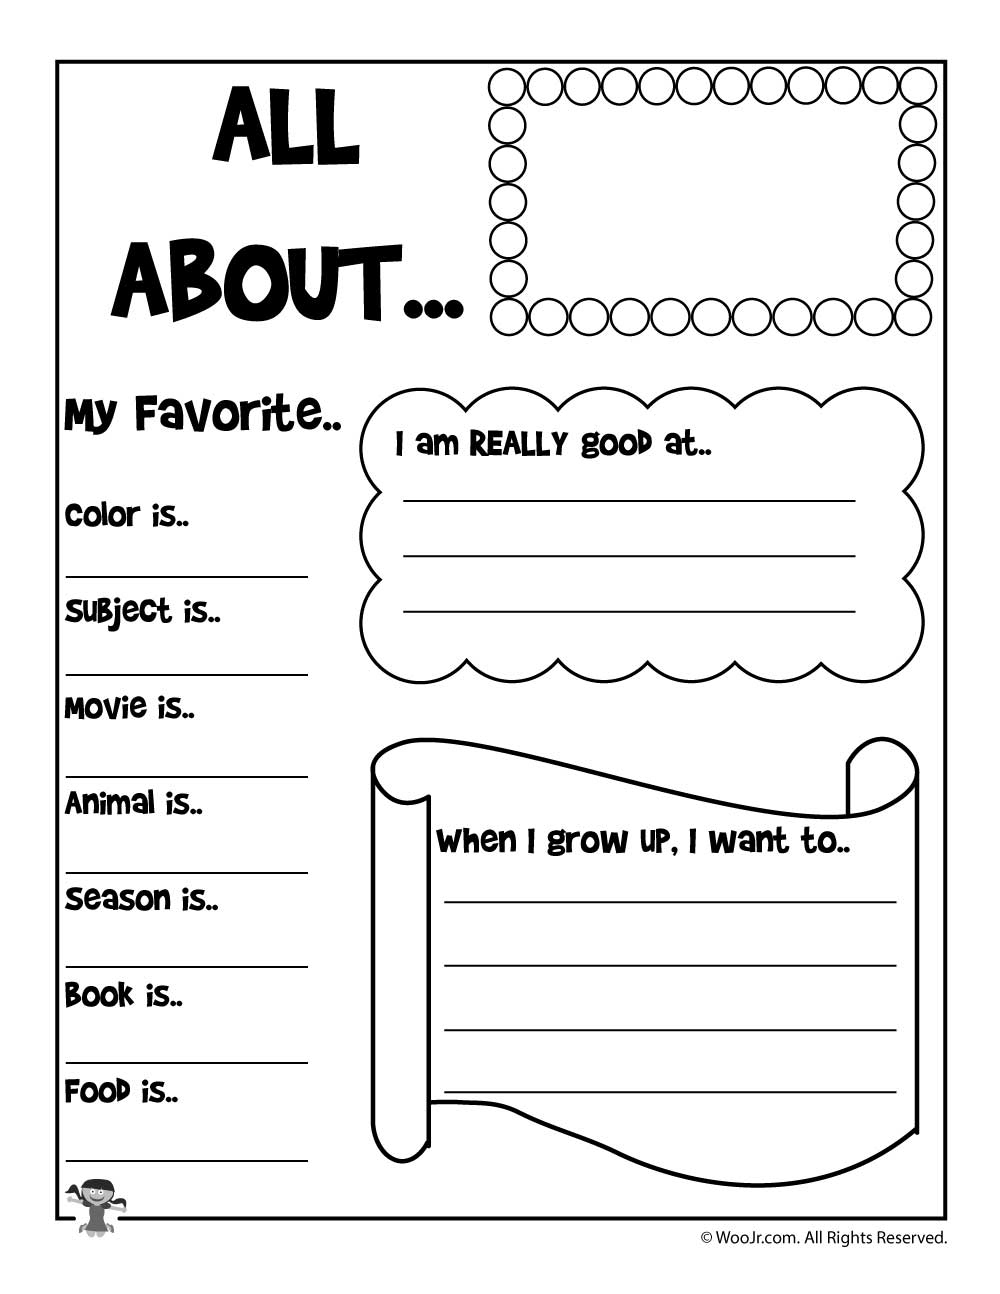 All About Me Worksheet Preschool Printable | Printable ...